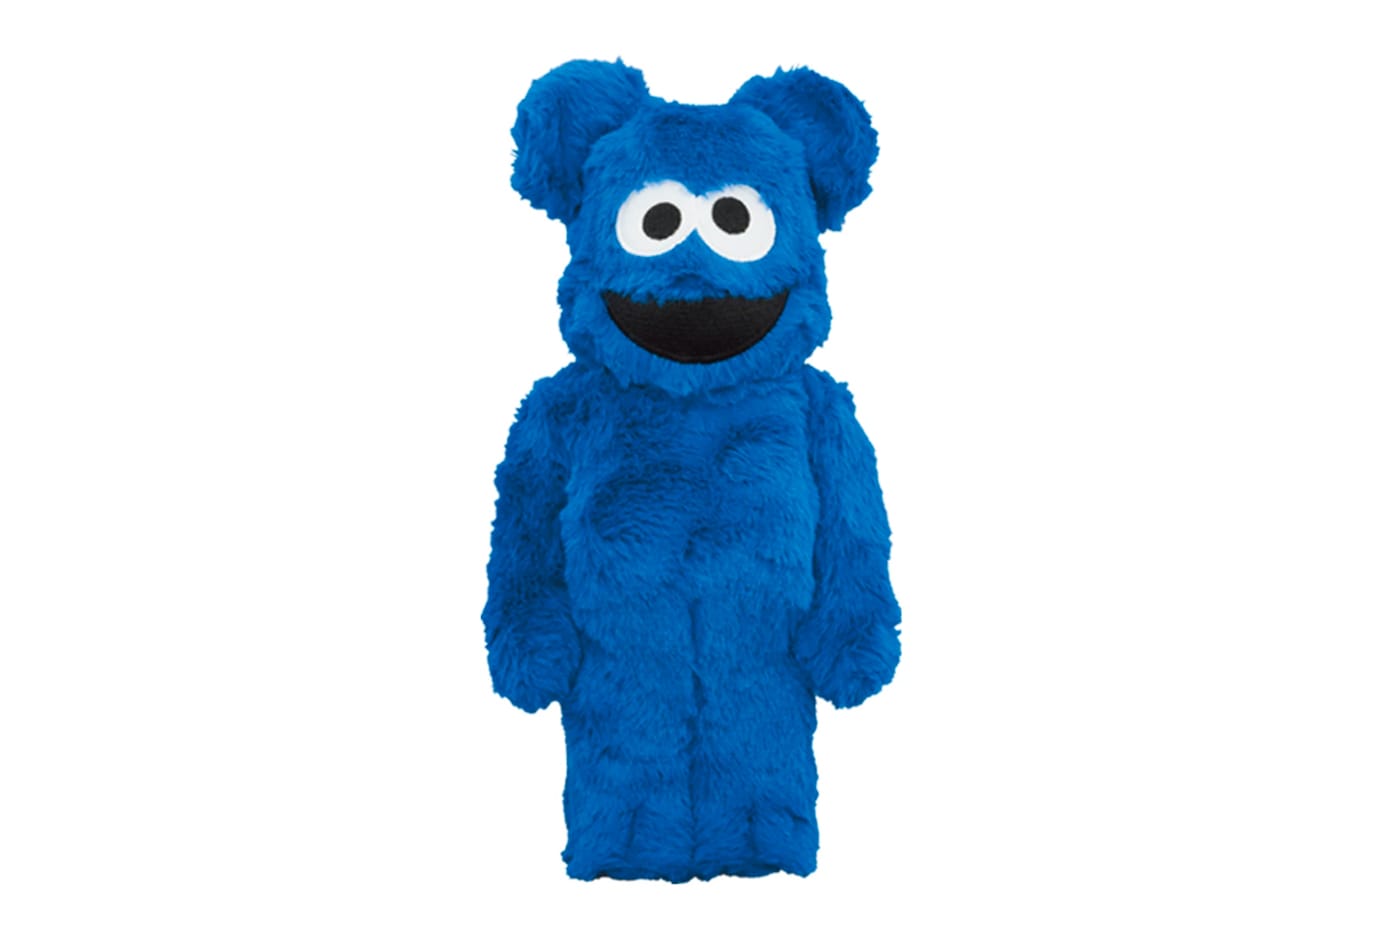 Medicom Toy Cookie Monster BE@RBRICK 400% Release | Hypebeast